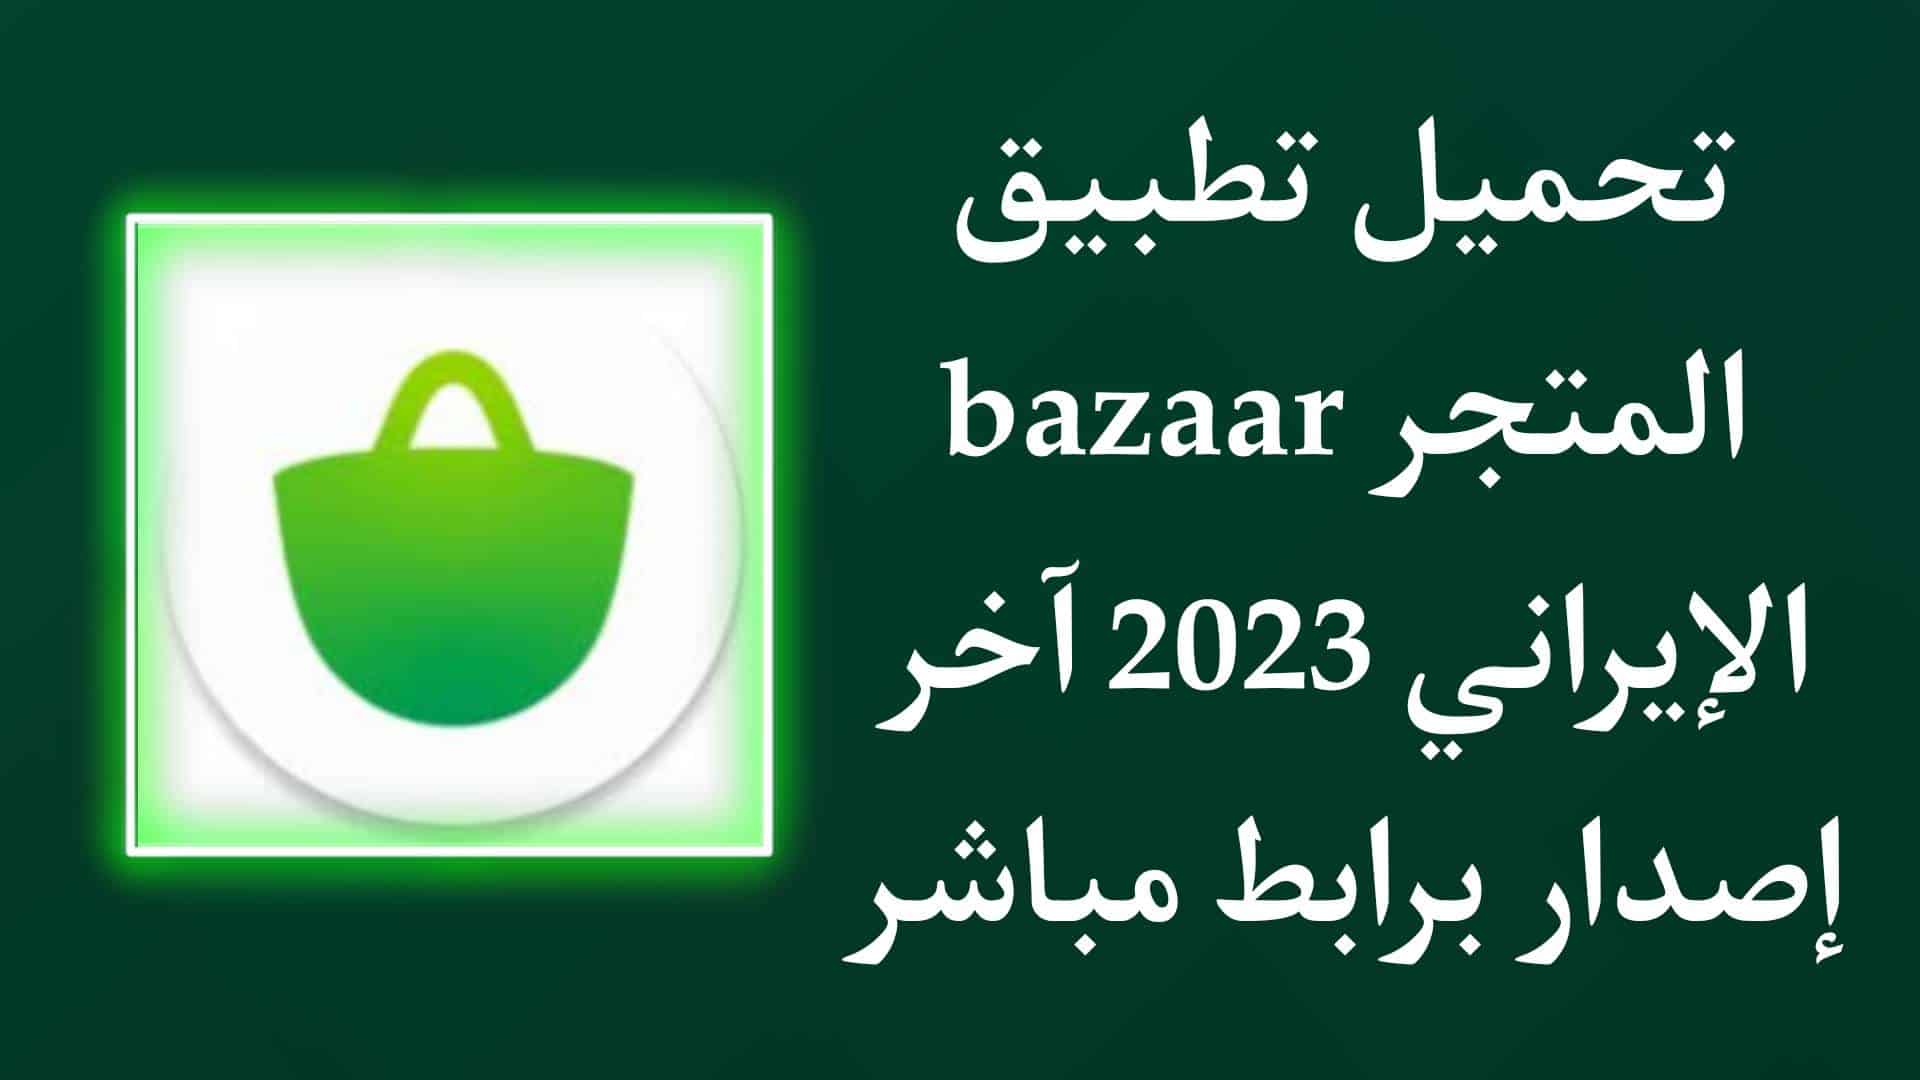 تحميل تطبيق bazaar متجر بازار الايراني 2023 للاندرويد APK